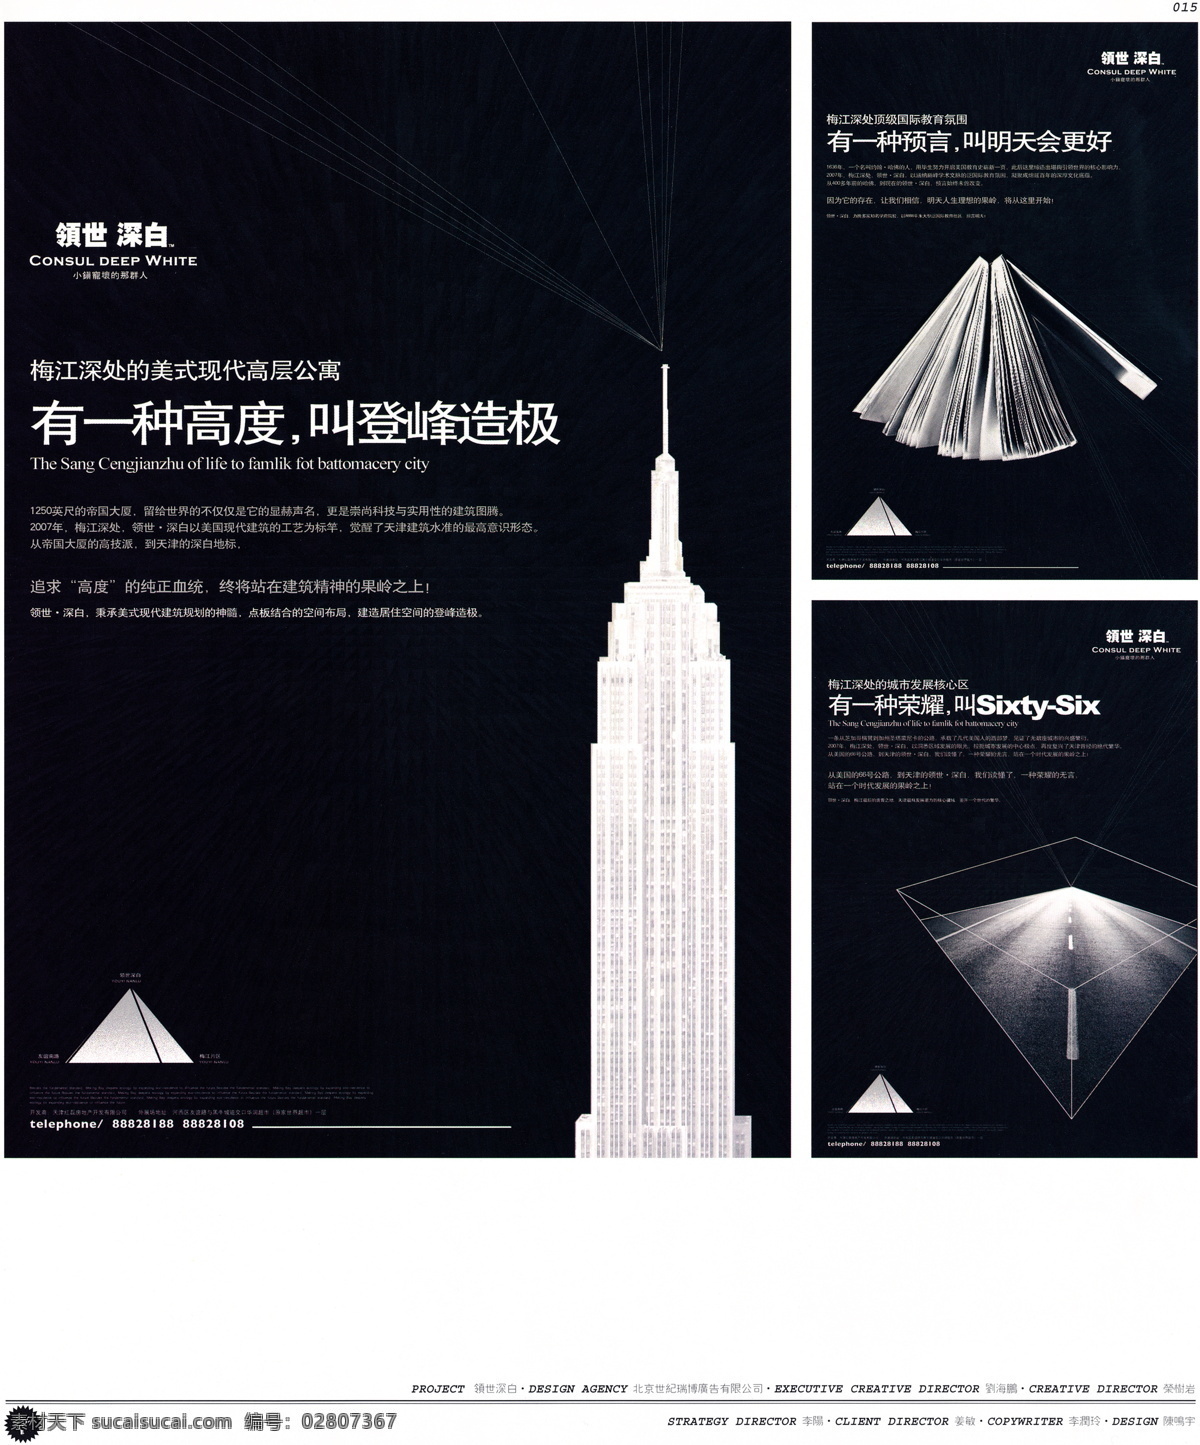 中国 房地产 广告 年鉴 第一册 创意设计 设计素材 房地产业 平面创意 平面设计 黑色